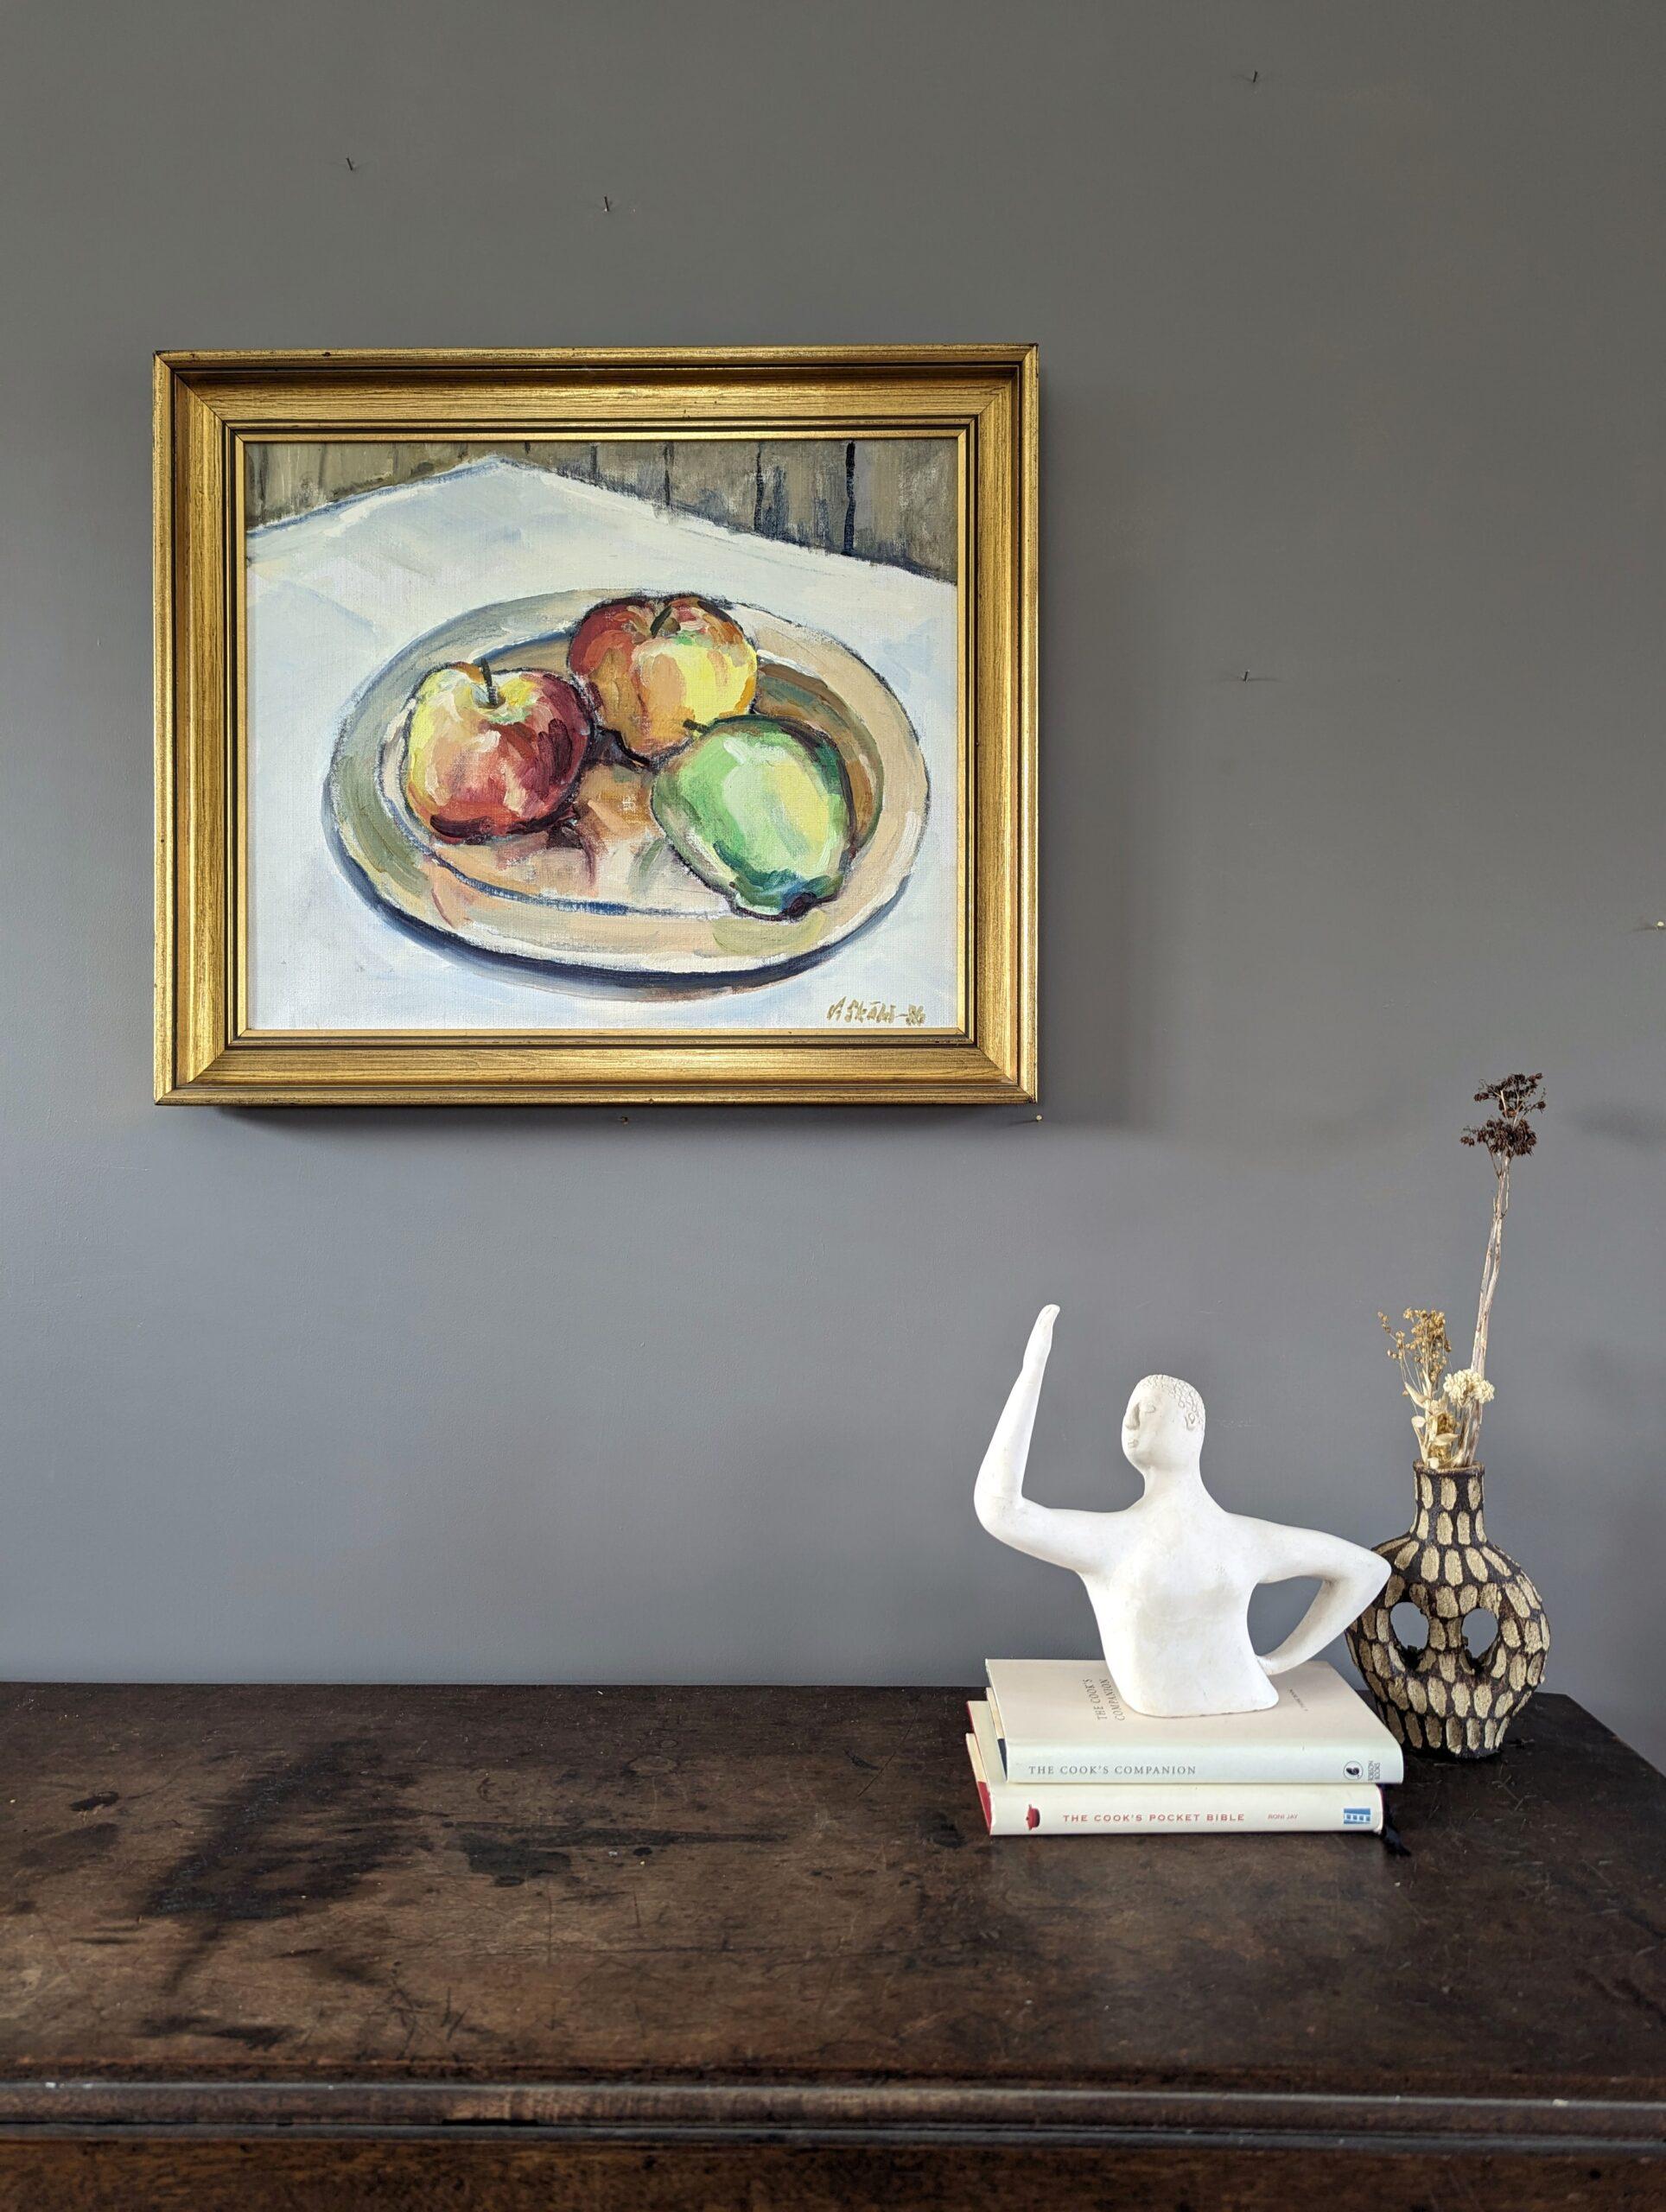 ORCHARD-ÄPFEL
Größe: 46,5 x 54,5 cm (einschließlich Rahmen)
Öl auf Leinwand

Eine sehr gekonnt ausgeführte modernistische Stilllebenkomposition in Öl, gemalt auf Leinwand und datiert 1986.

Auf diesem Bild liegen 3 Äpfel auf einer Untertasse auf